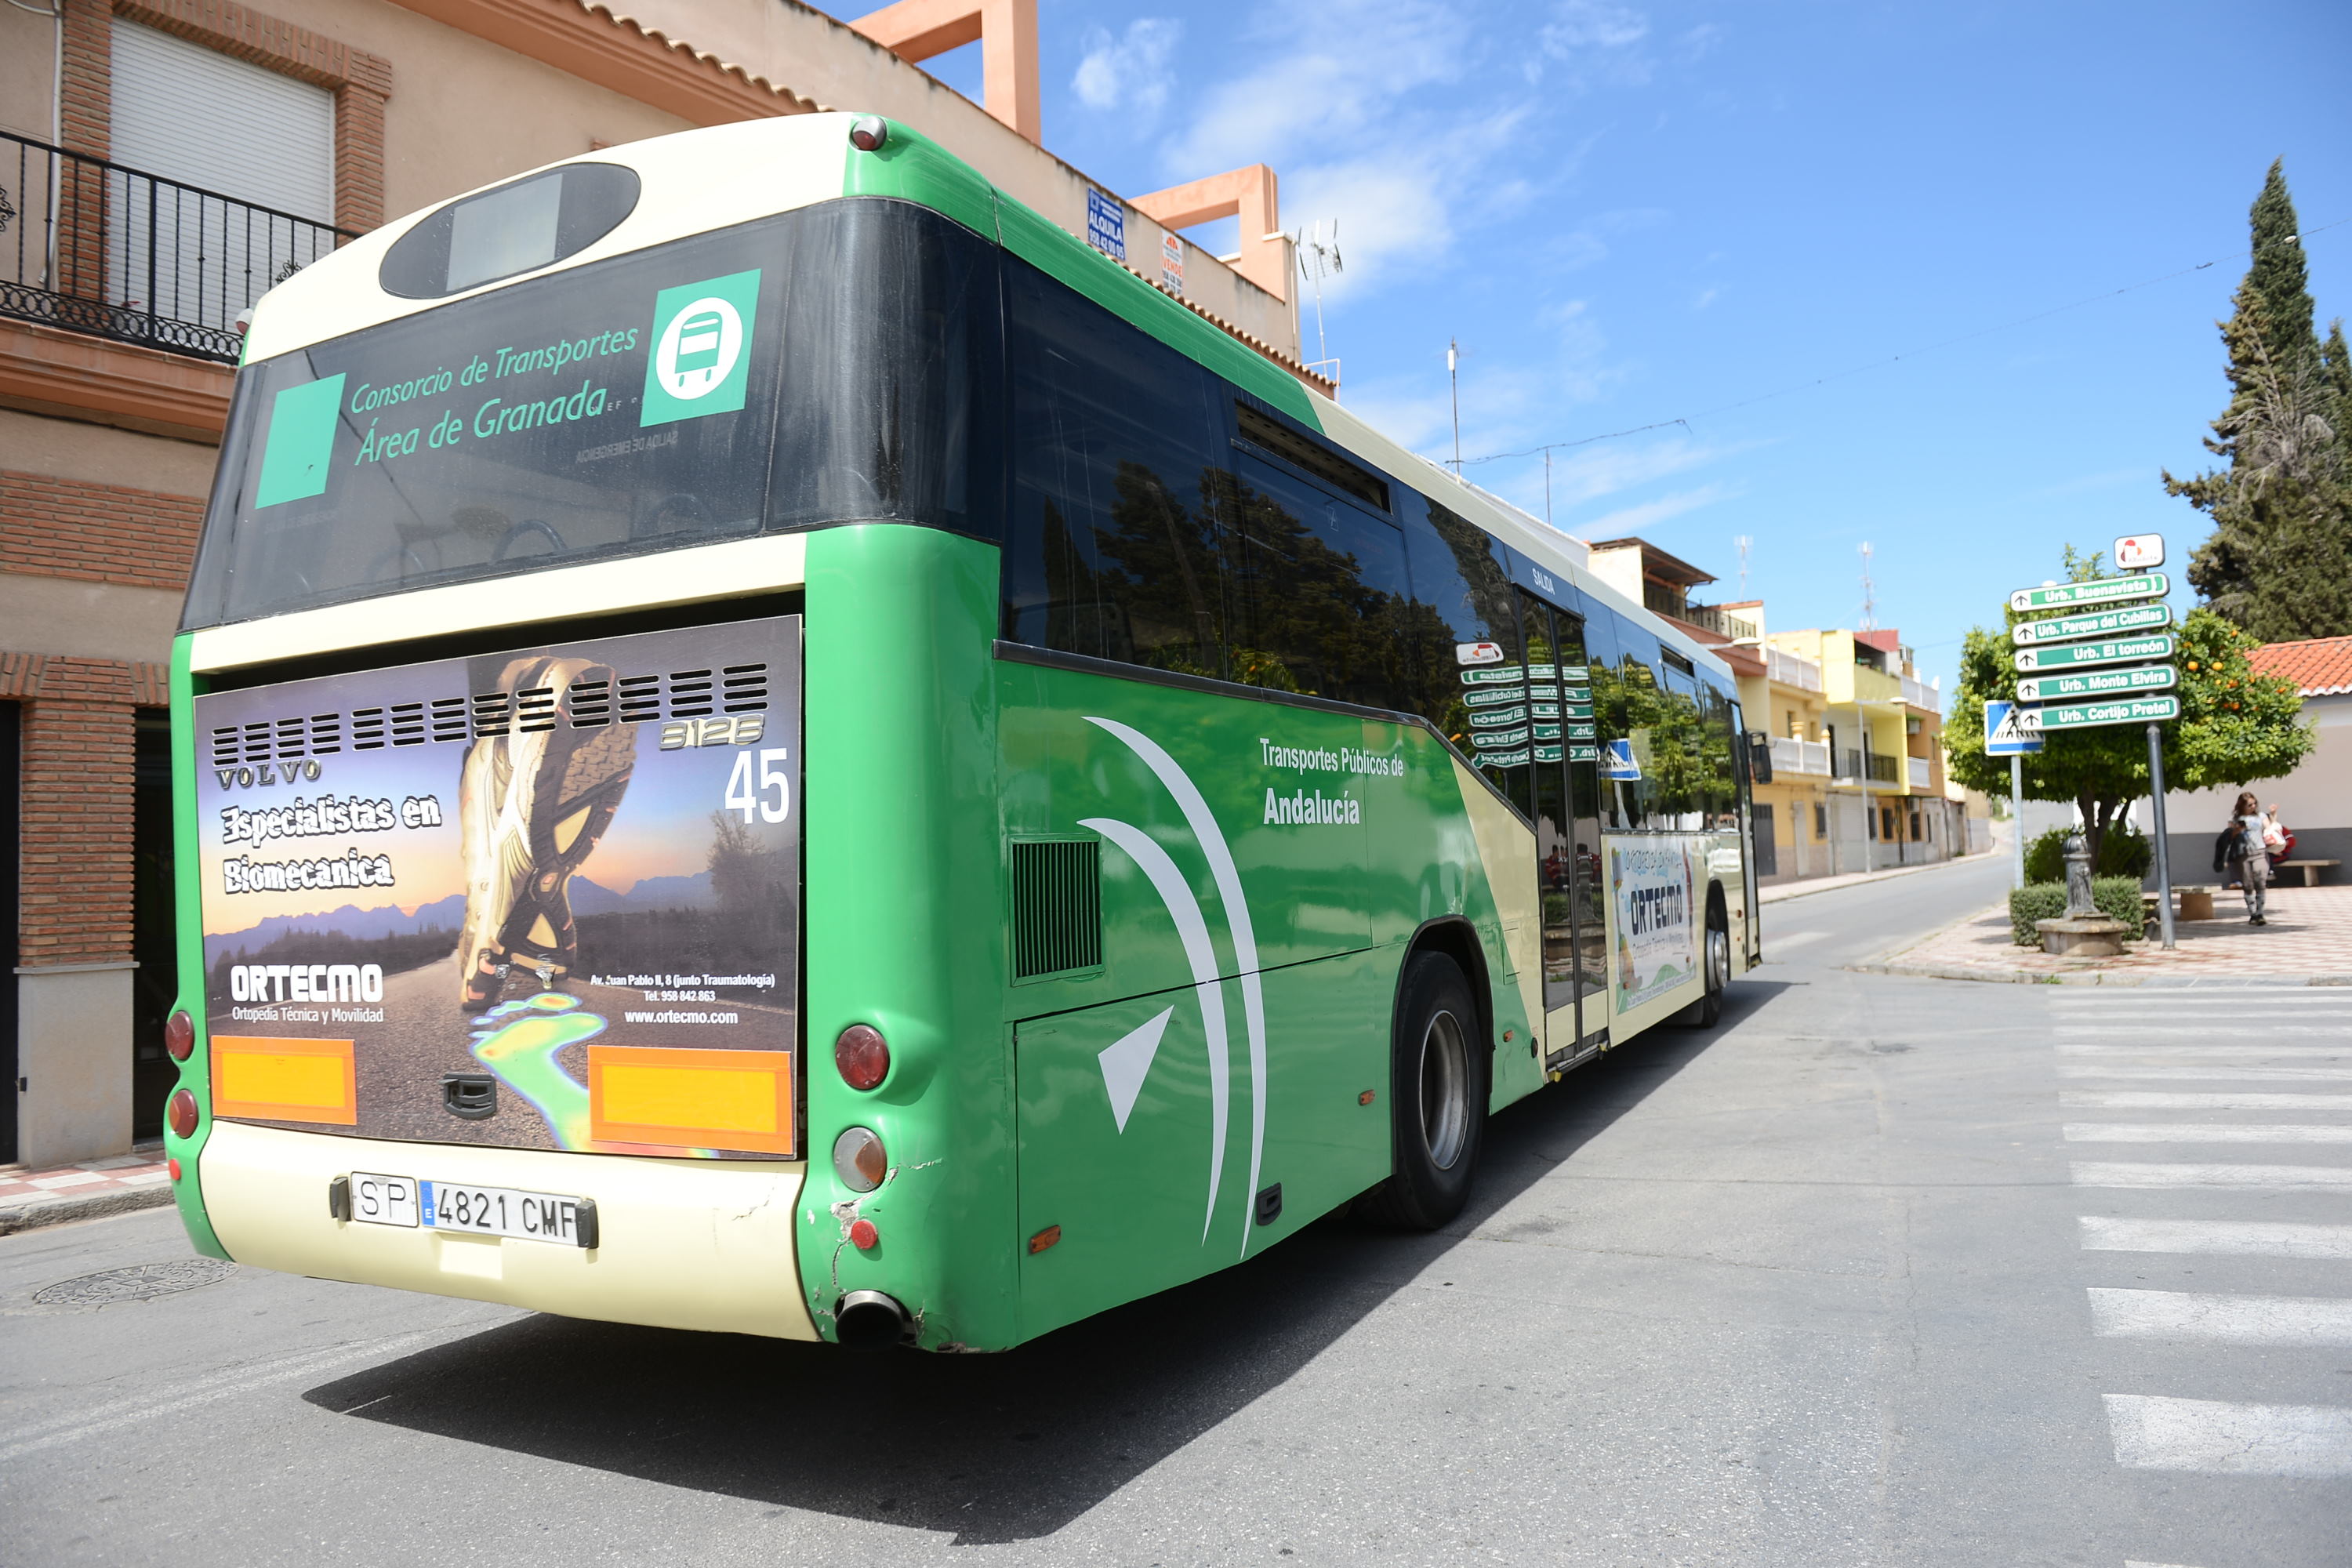 Más de 26.000 usuarios solicitan la Tarjeta Joven de Transporte en la provincia de Granada